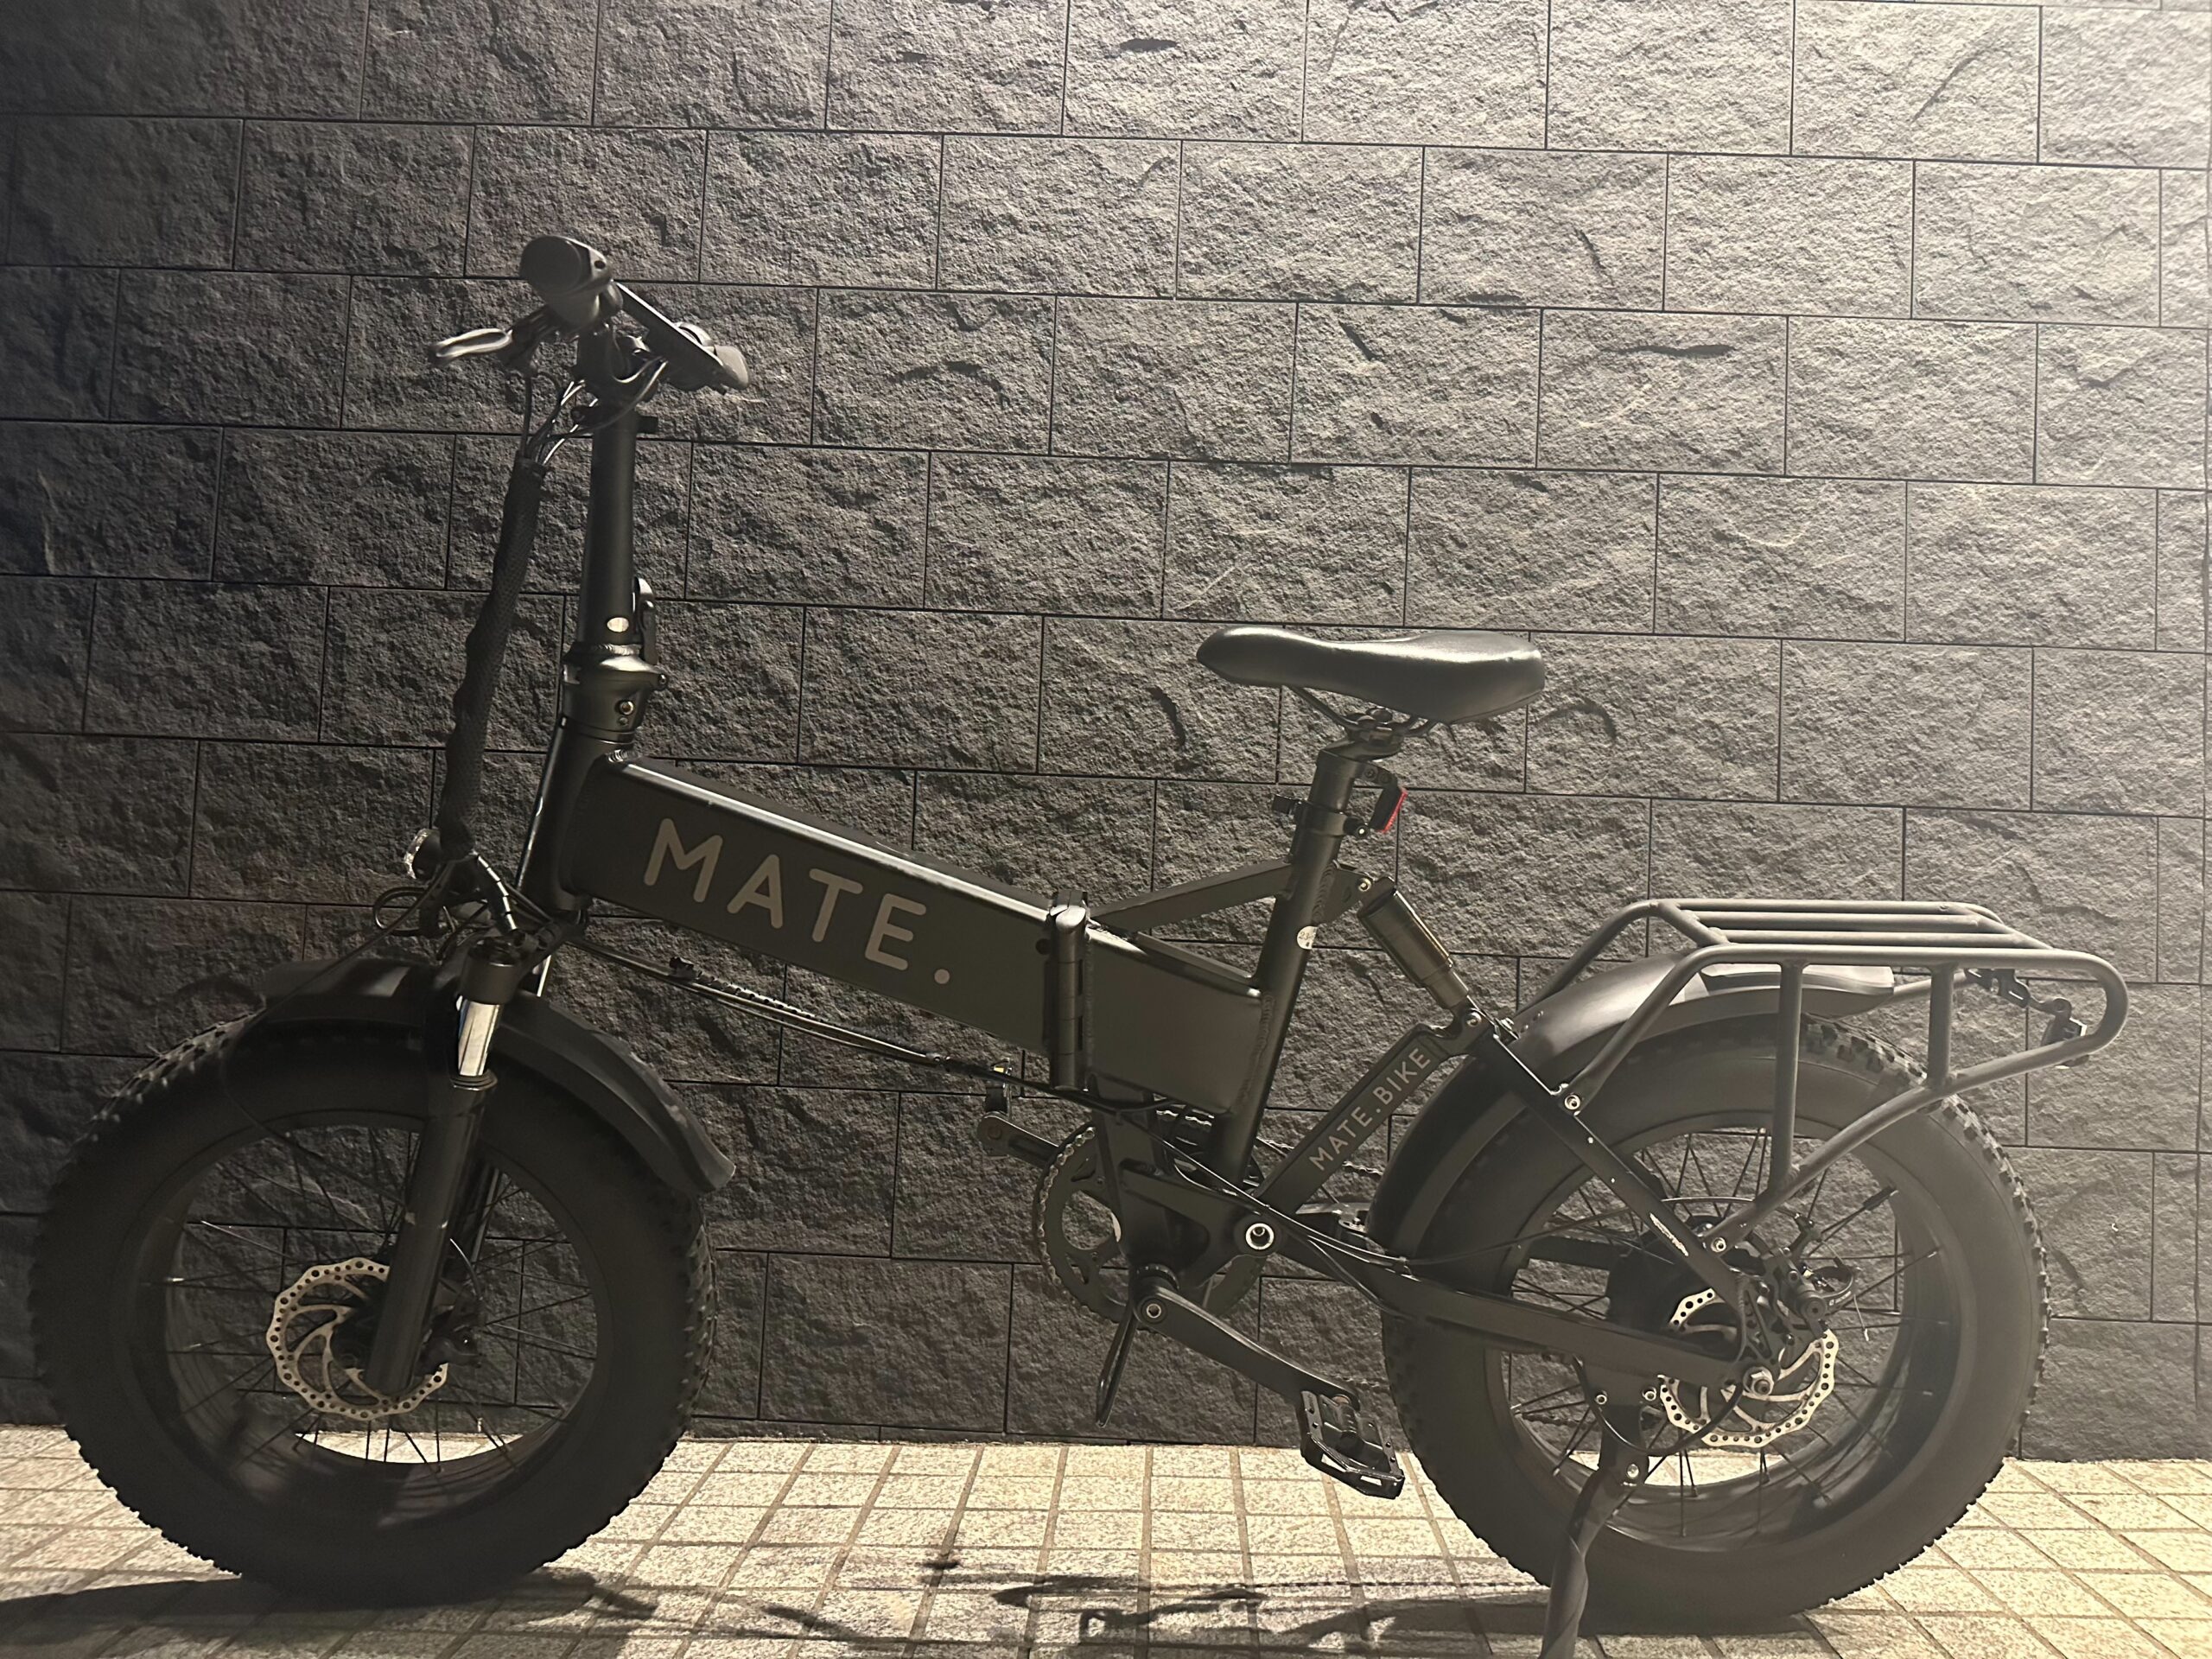 メイトバイクX250¥250,000